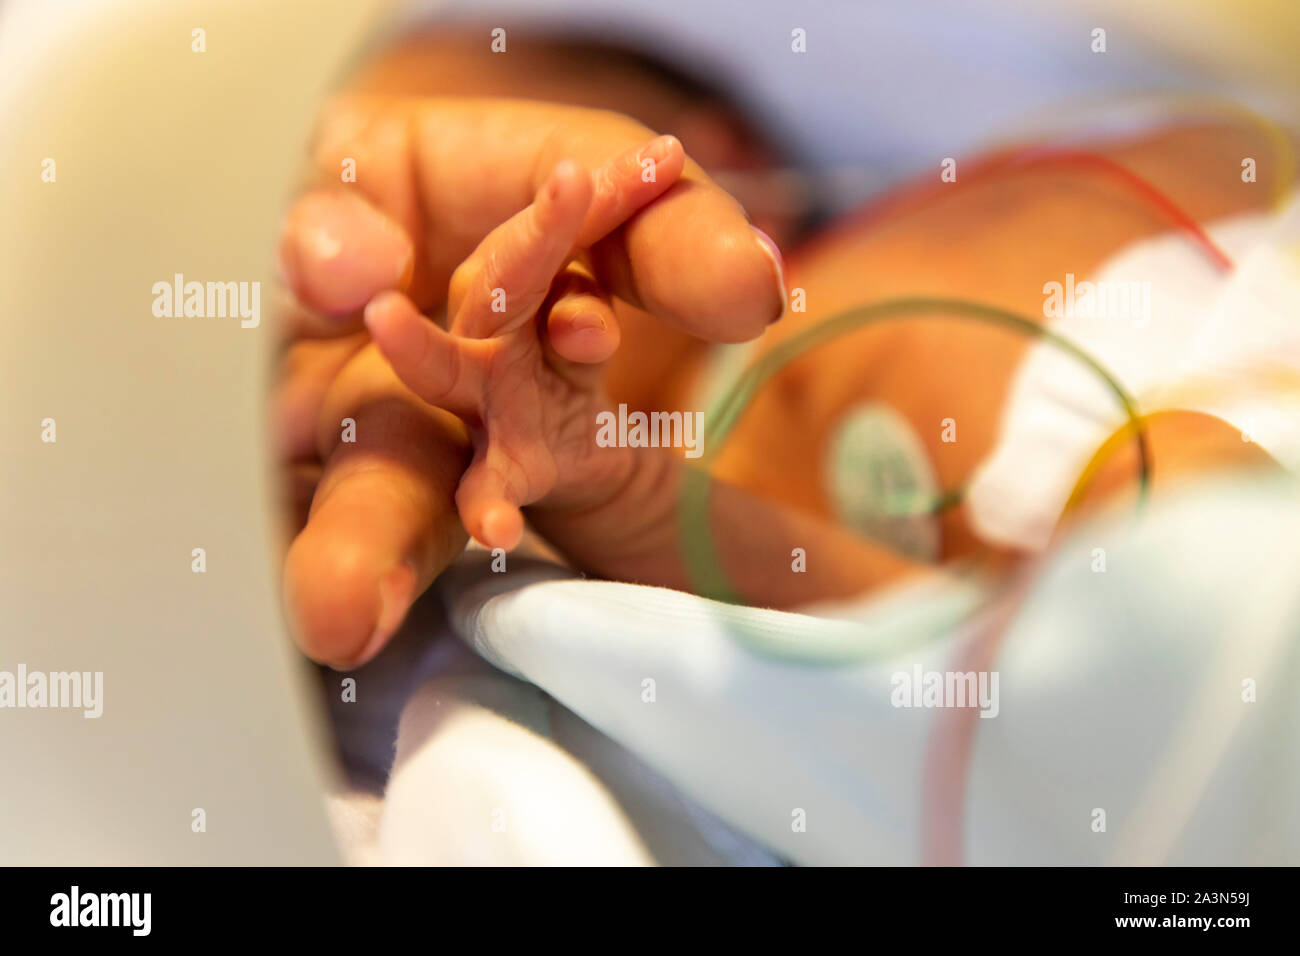 Nascita prematura ward in un ospedale, un reparto di neonatologia, neonati prematuri in un incubatore, mano della madre, Foto Stock